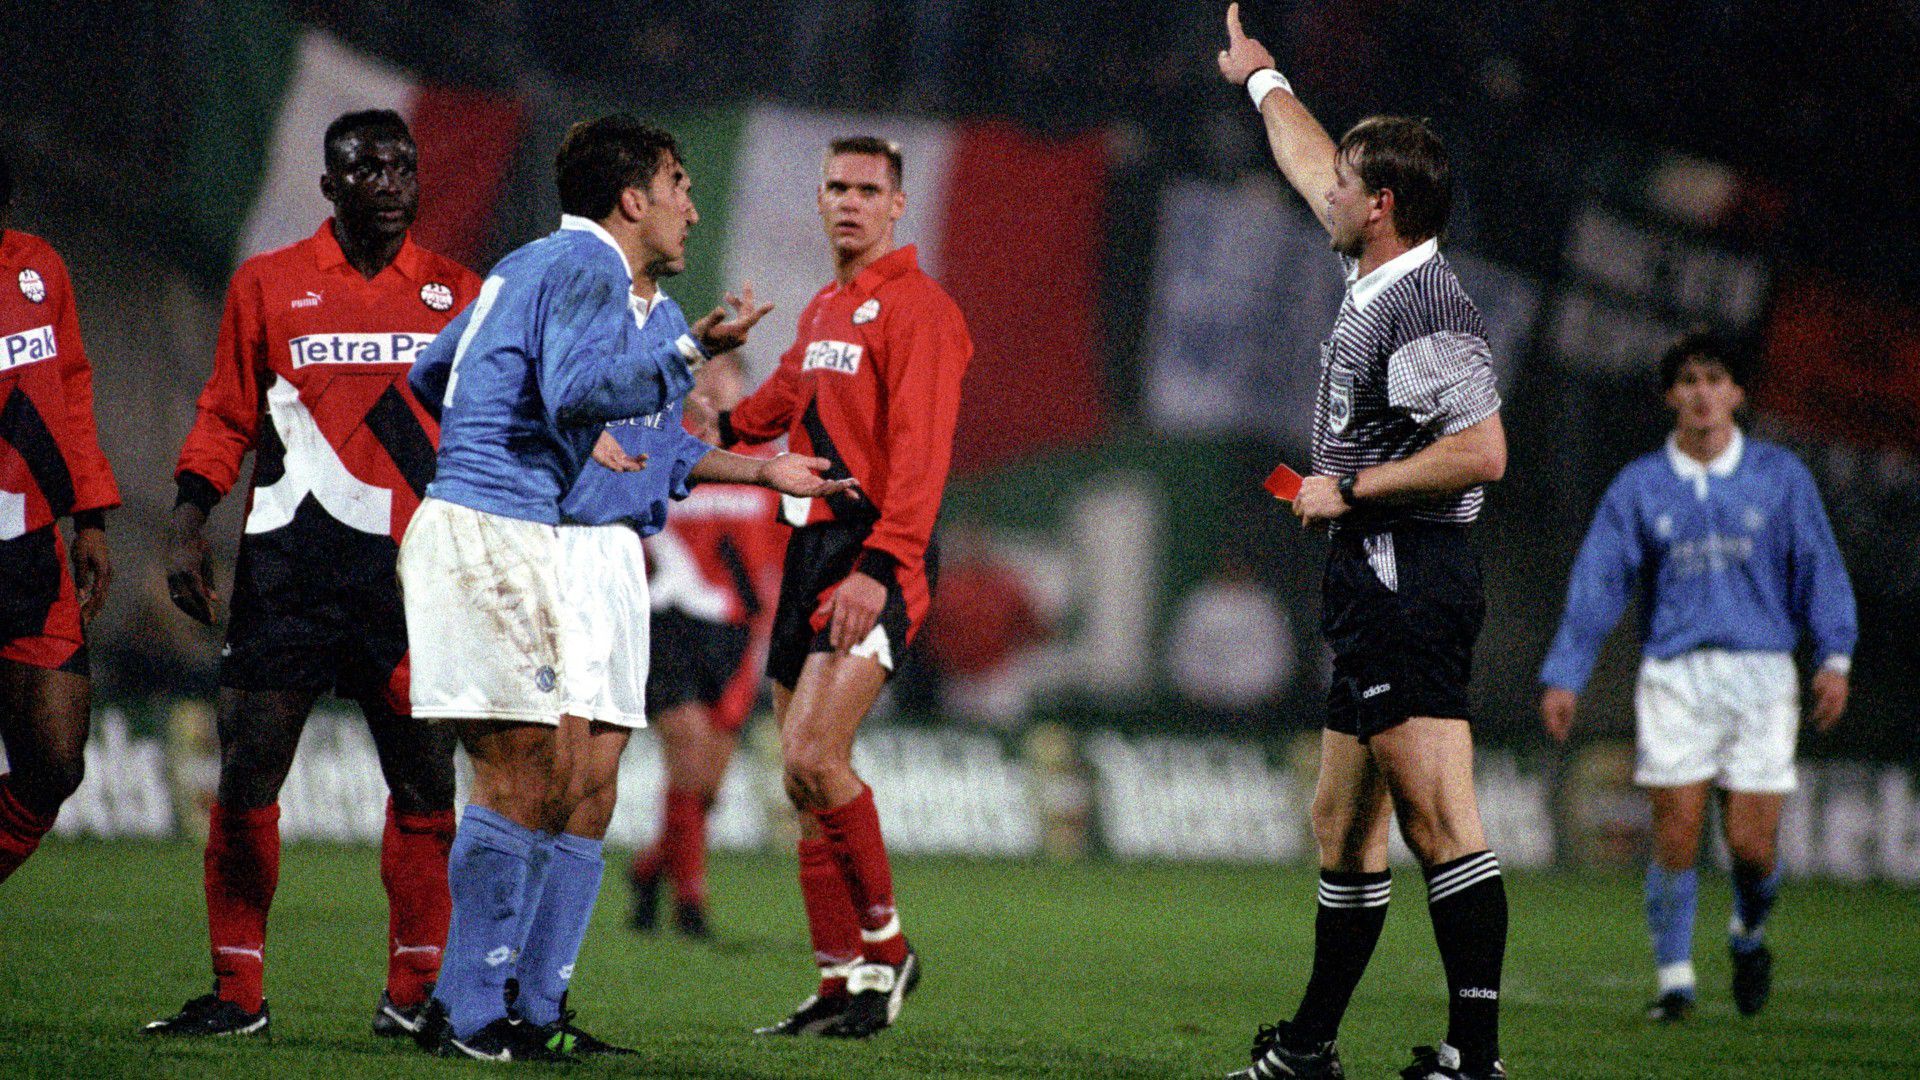 Szigorú és következetes volt, ezt egy Napoli–Frankfurt UEFA-kupa-mérkőzésen is bizonyította. (Fotó: Getty Images)